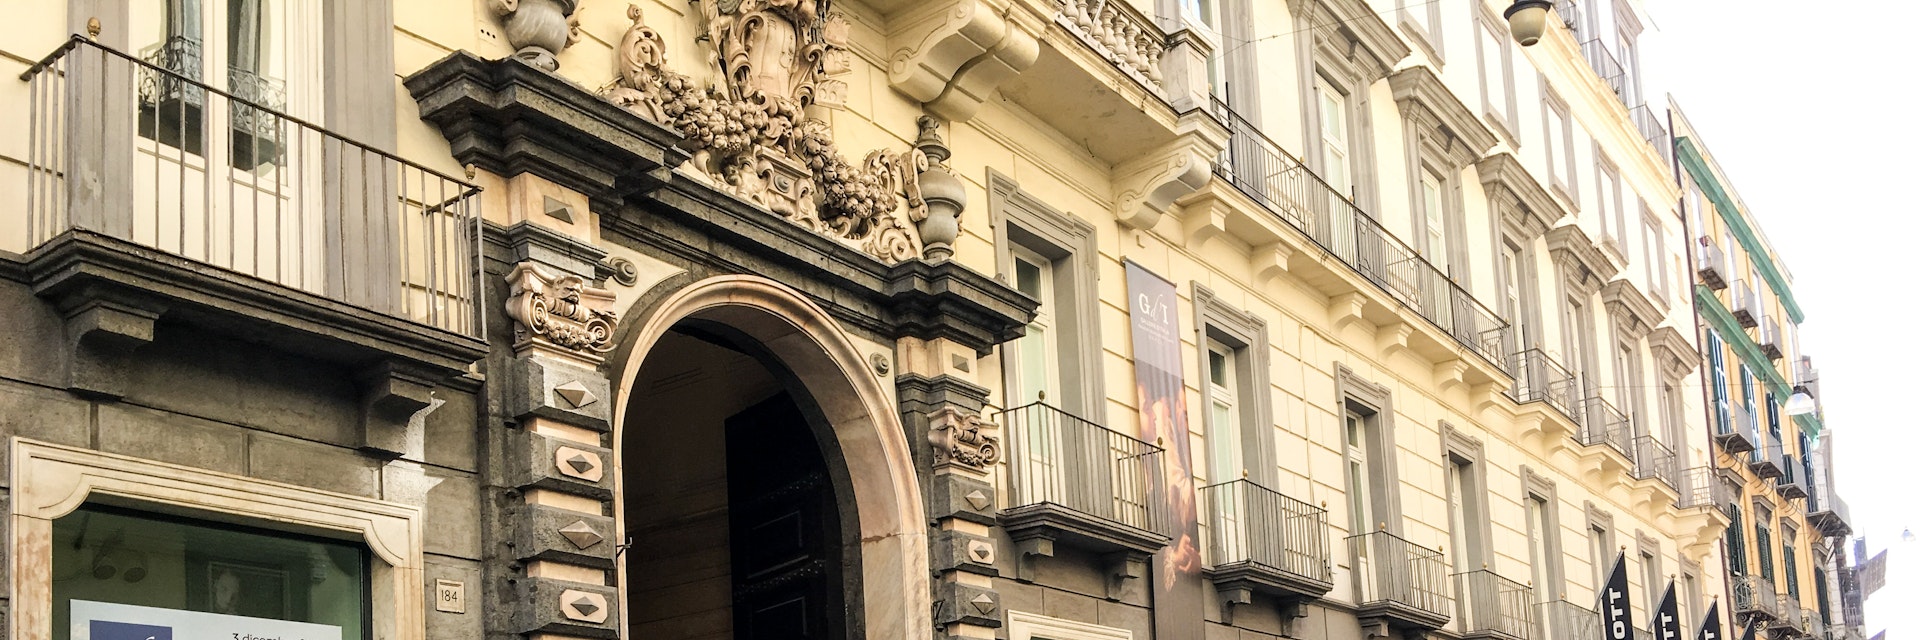 Entrance to Palazzo Zevallos Stigliano